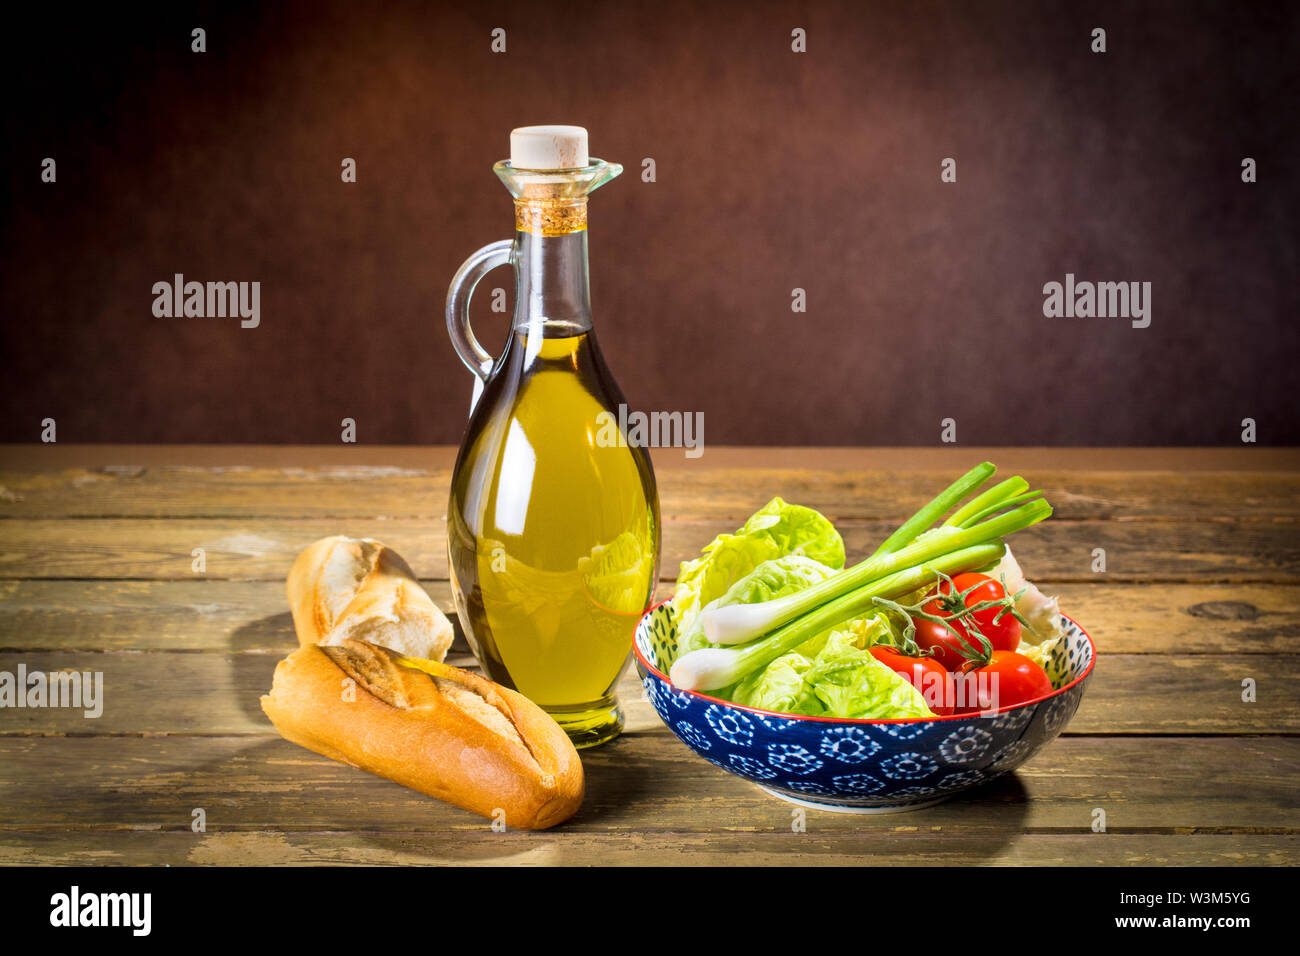 La qualité de Premier ministre de l'huile d'olive extra vierge de Jaen, Espagne, dans une fiole de décoration avec les ingrédients d'une salade mixte bol et une baguette de pain Banque D'Images